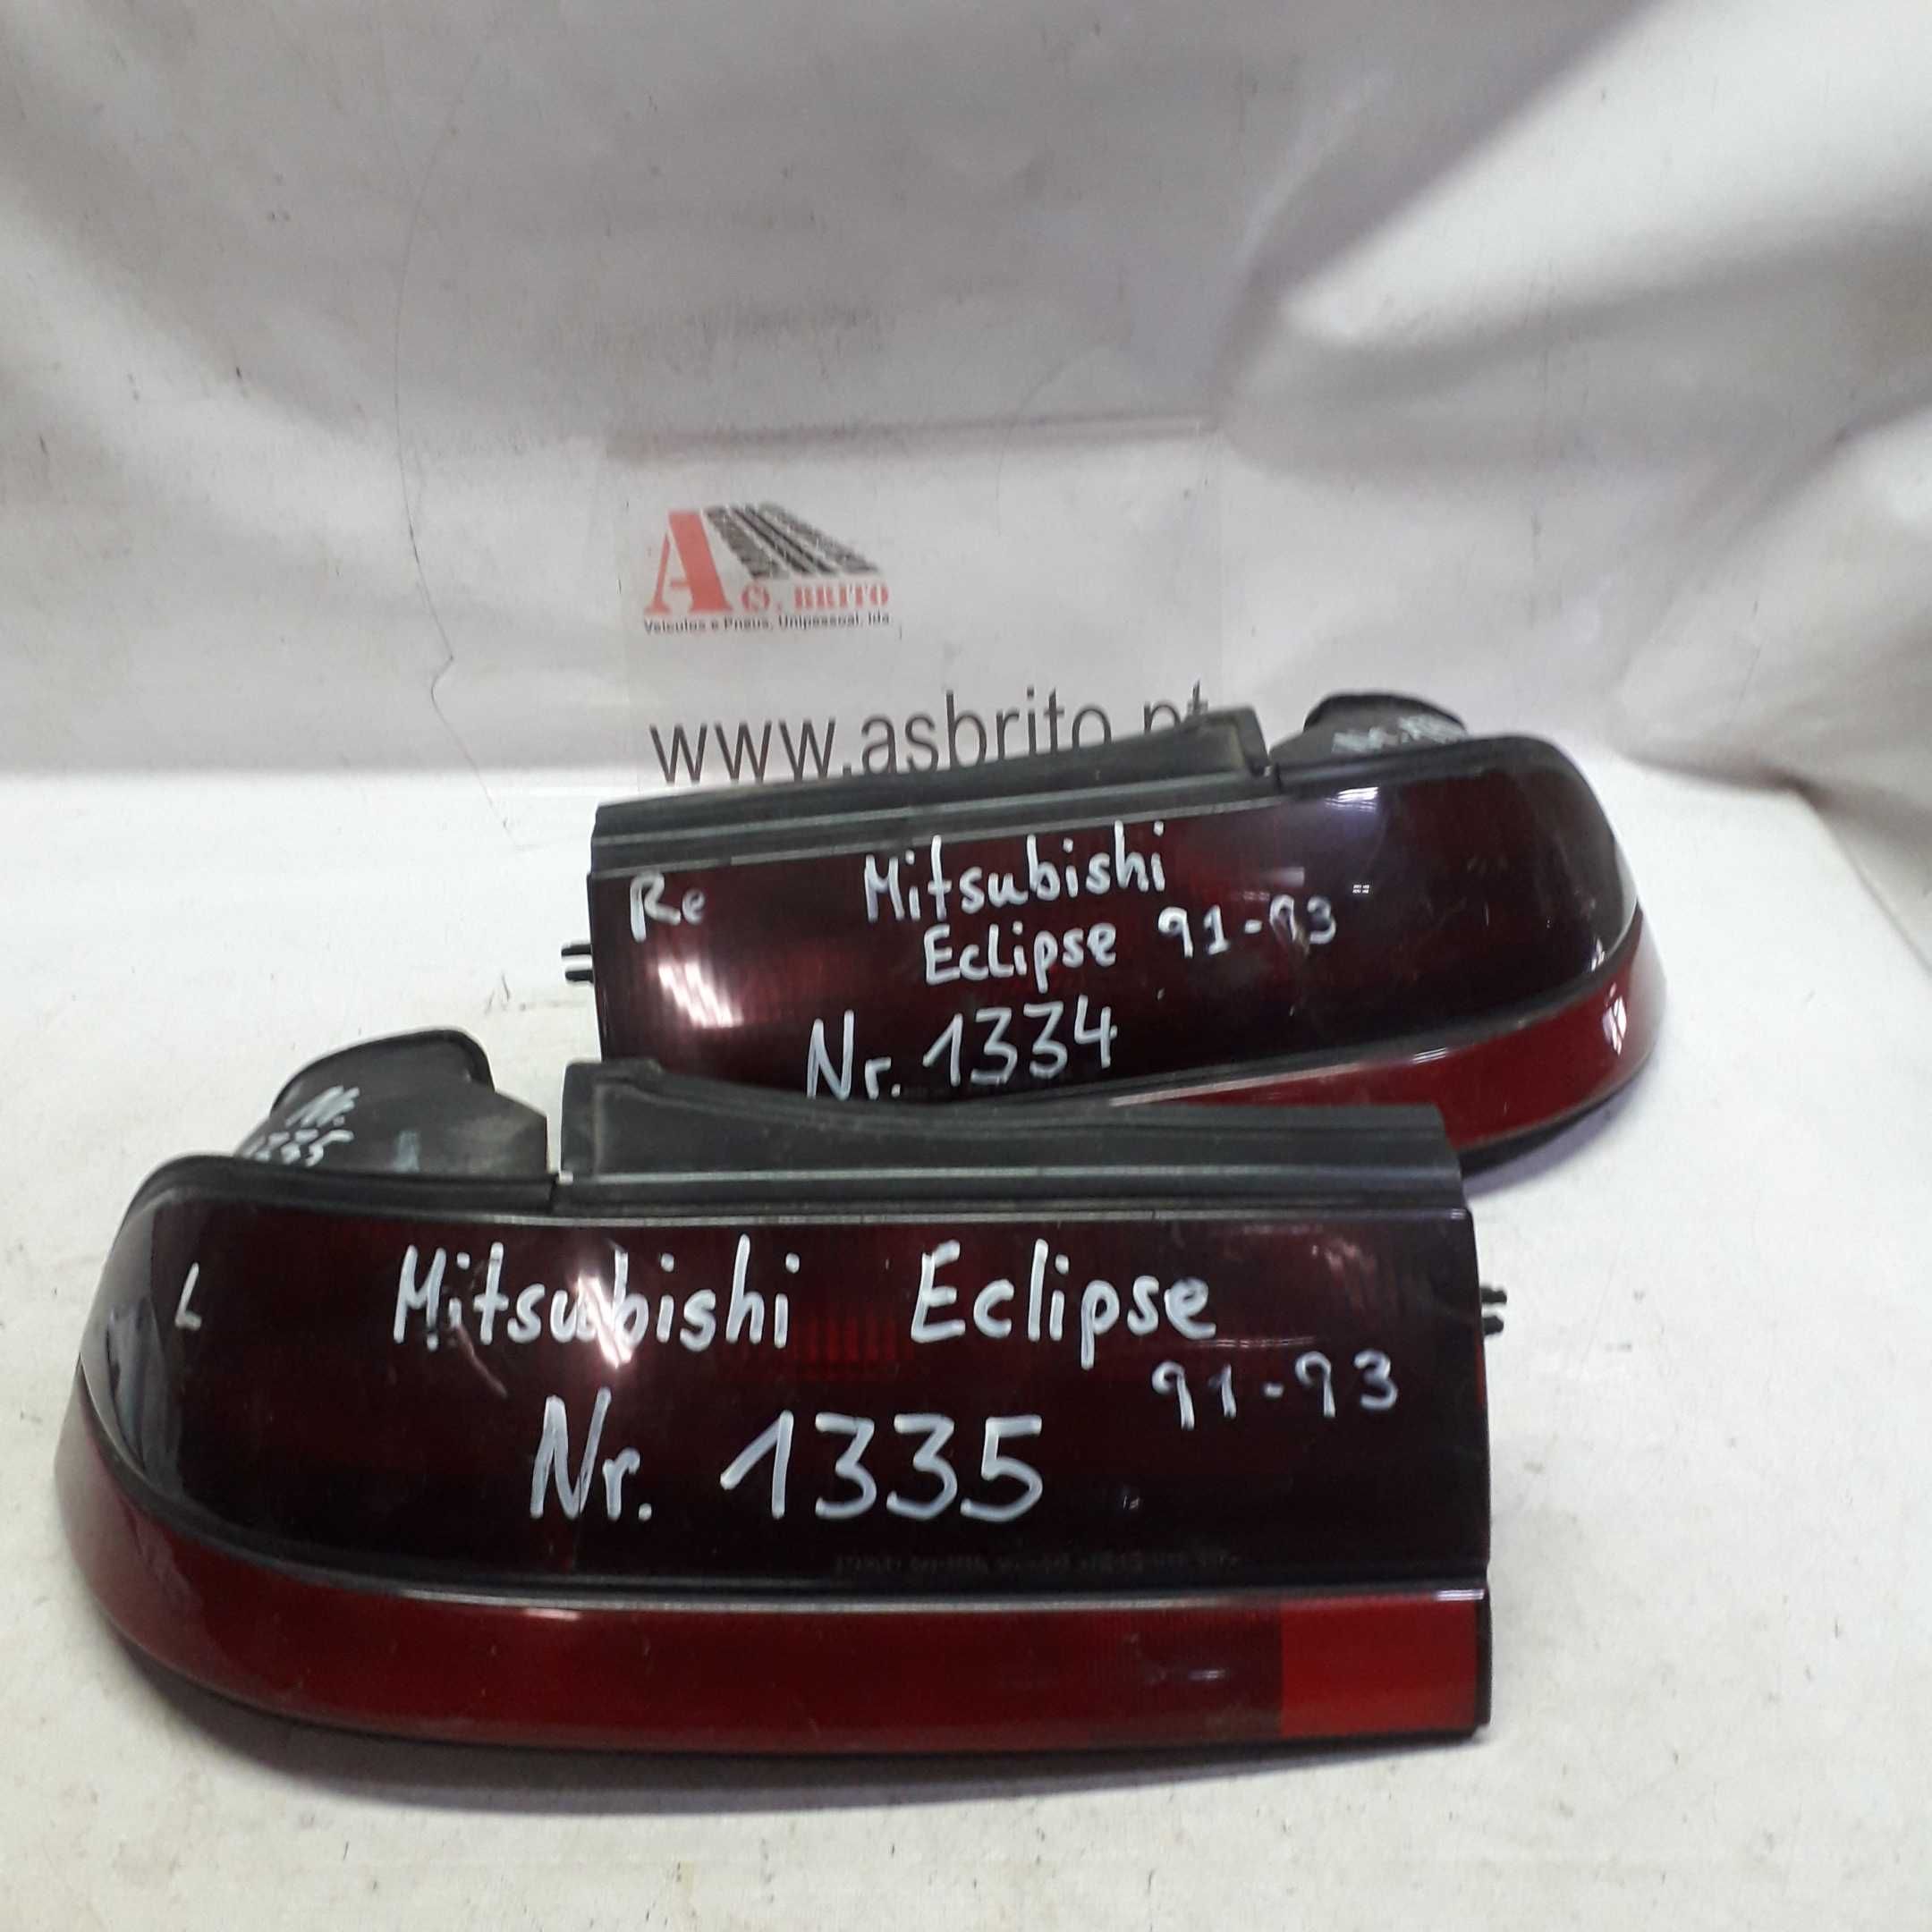 Farolins Mitsubishi Eclipse 91/93